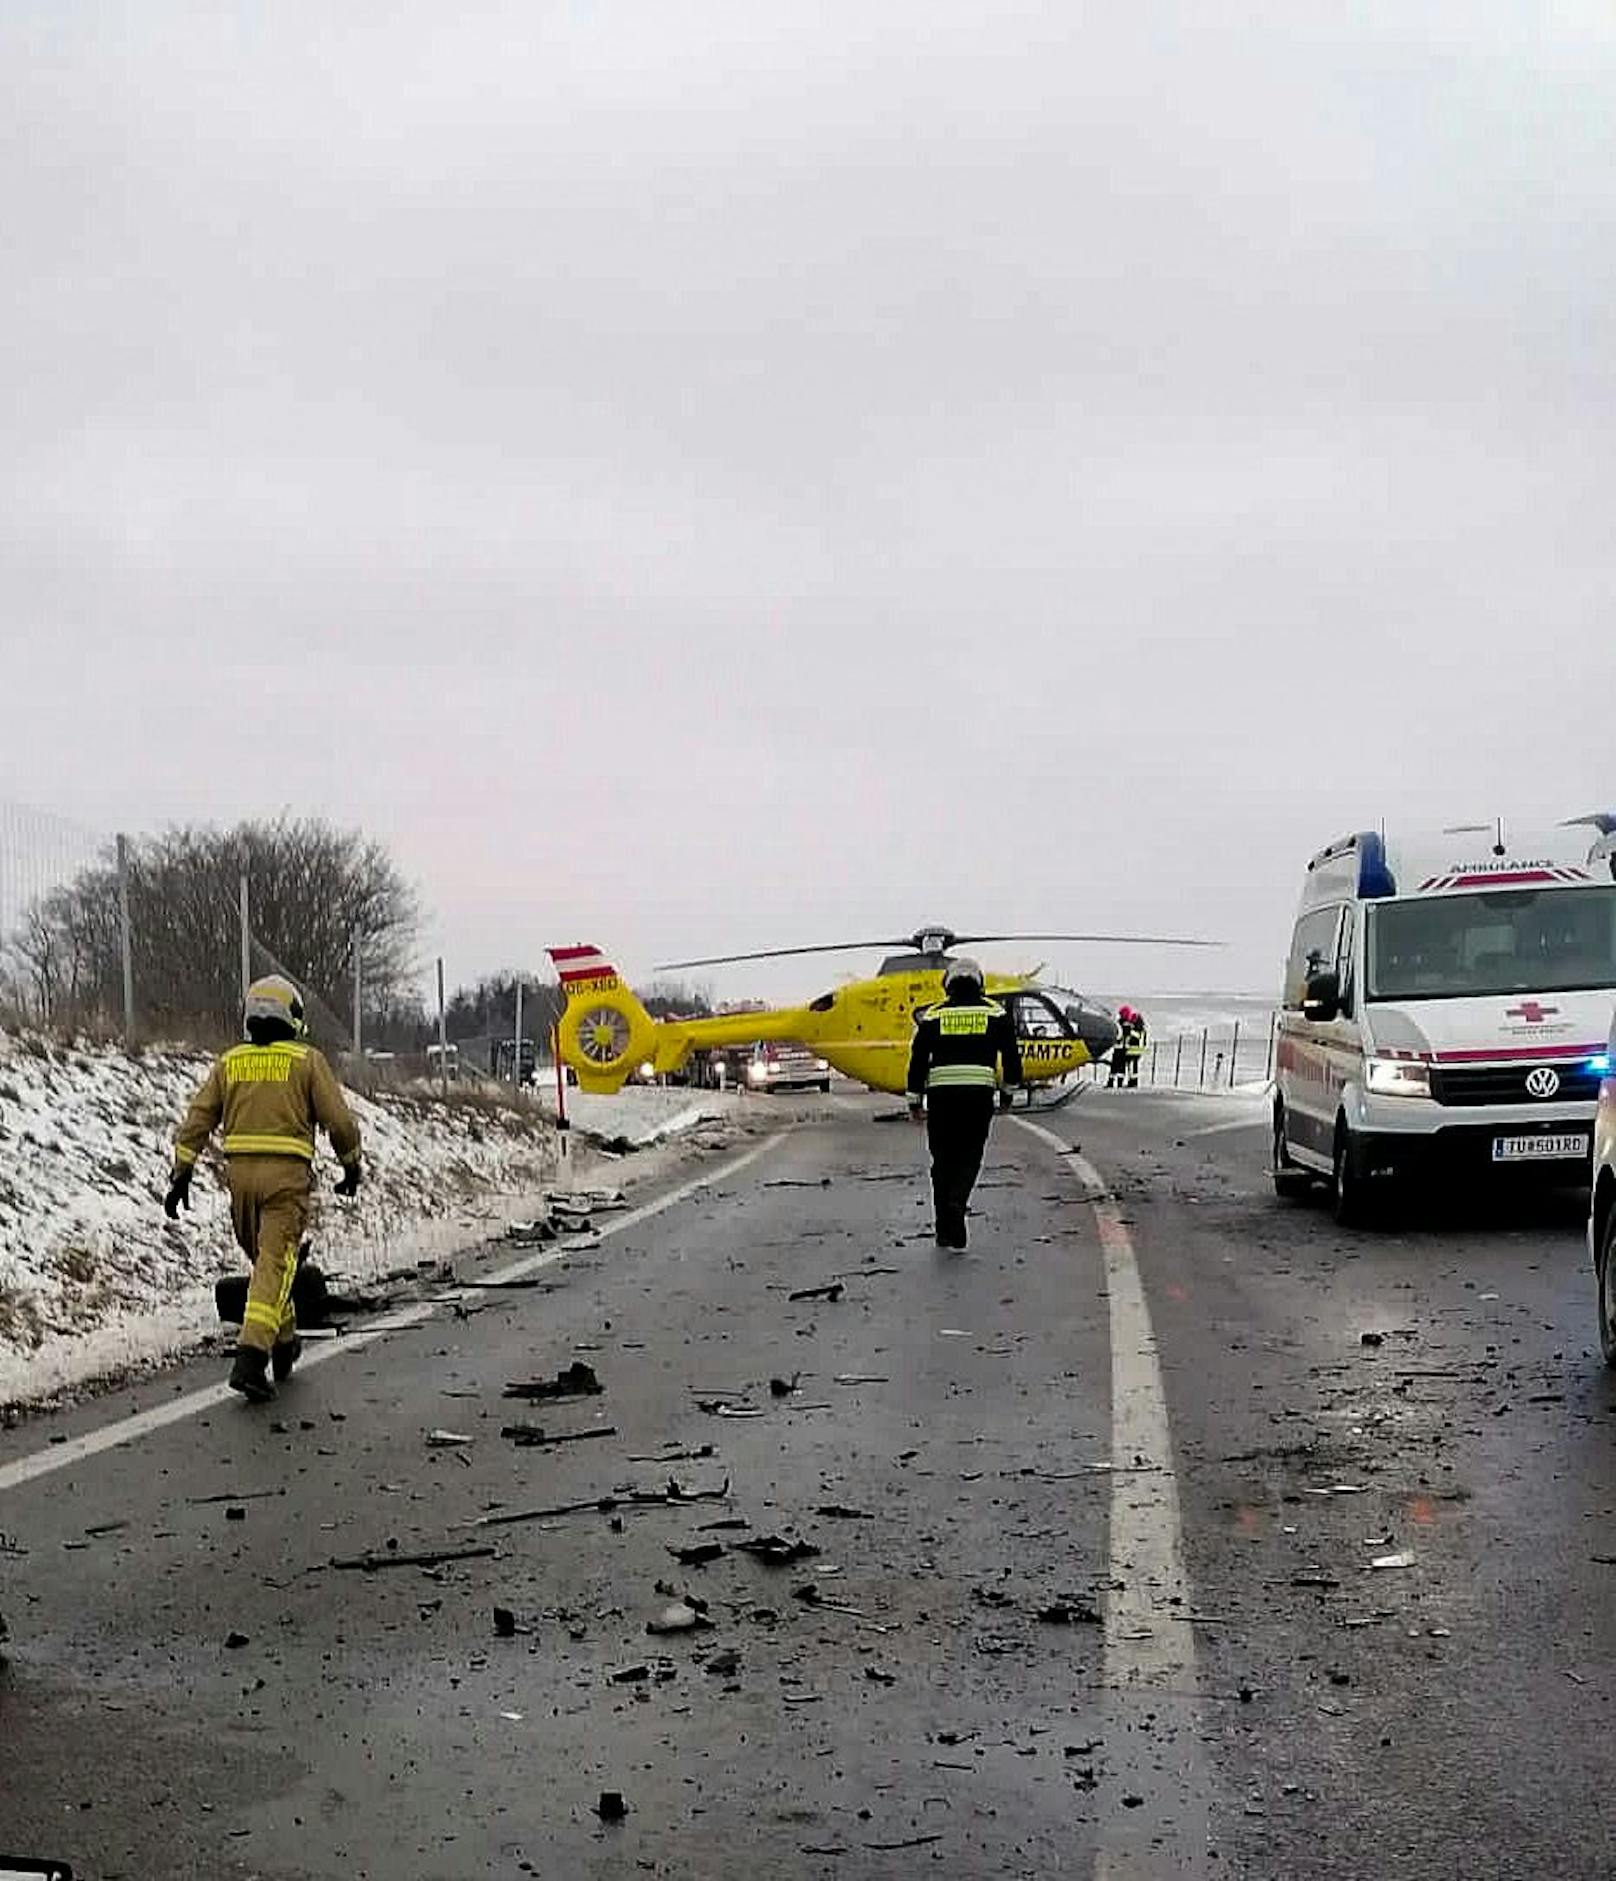 Tragischer Unfall in Mistelbach: Ein Pkw krachte gegen einen Lkw, der Autofahrer starb.